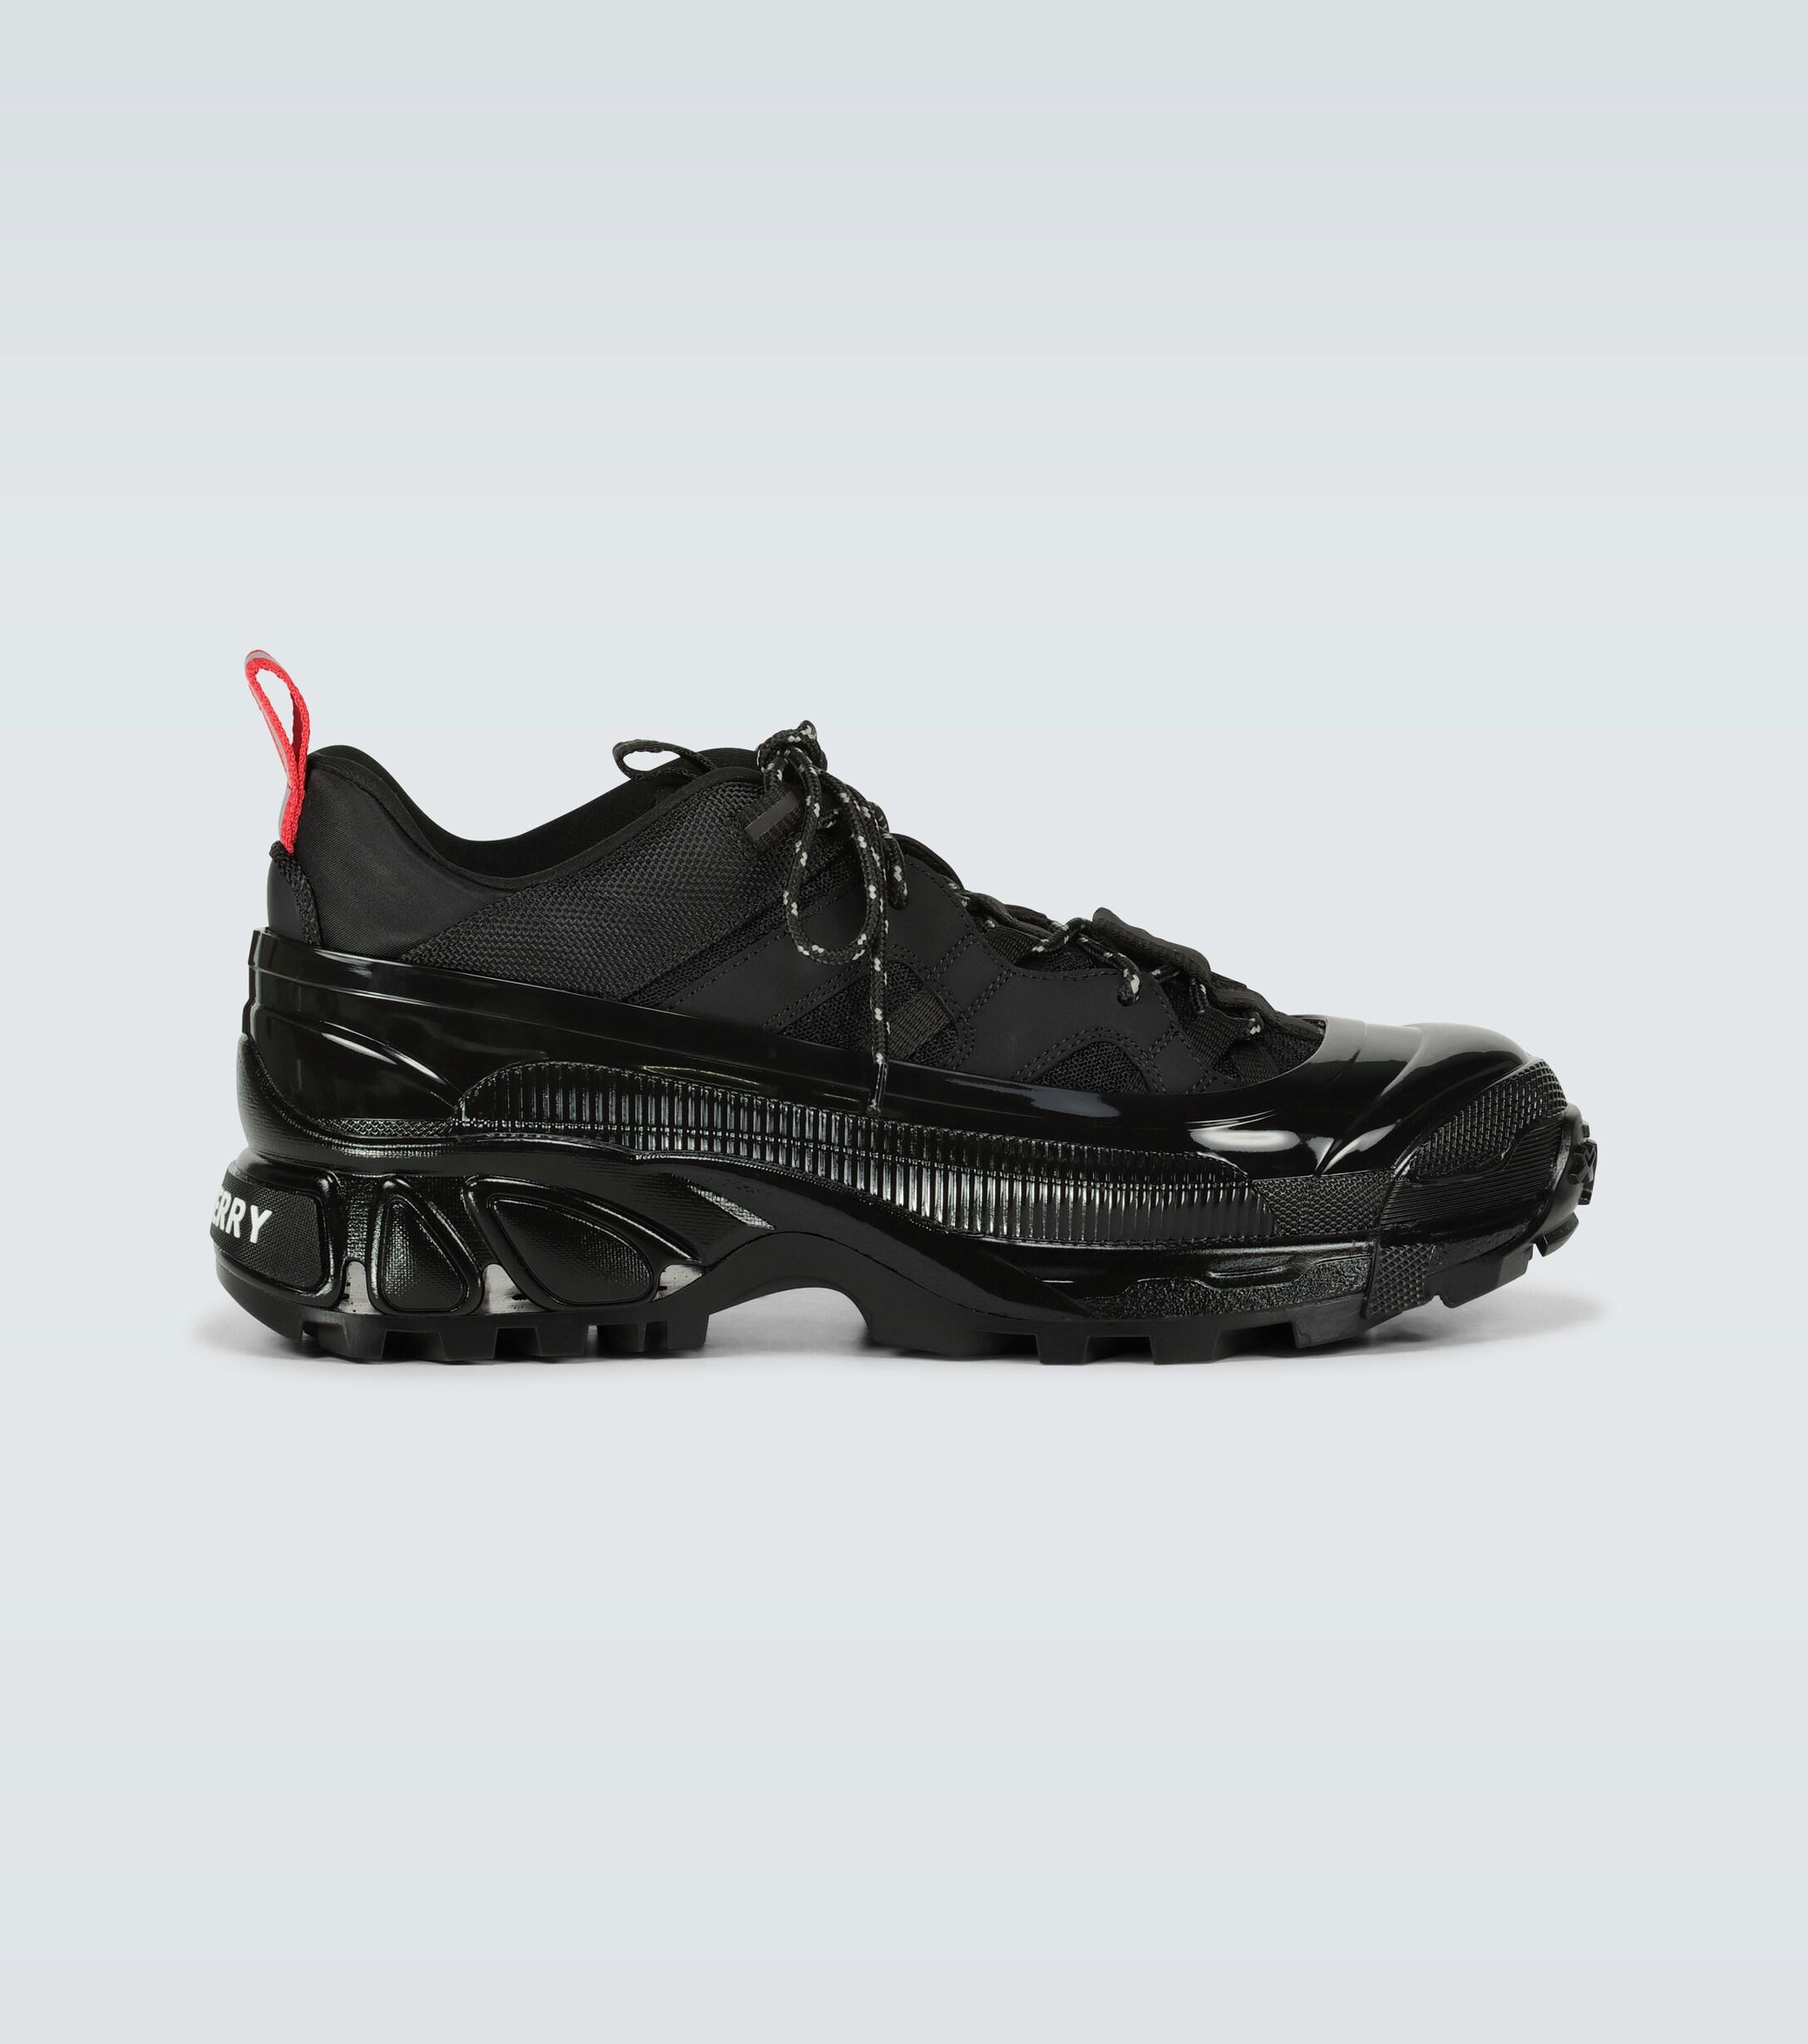 Burberry Synthetic Arthur Runner Sneakers in Black for Men - Lyst